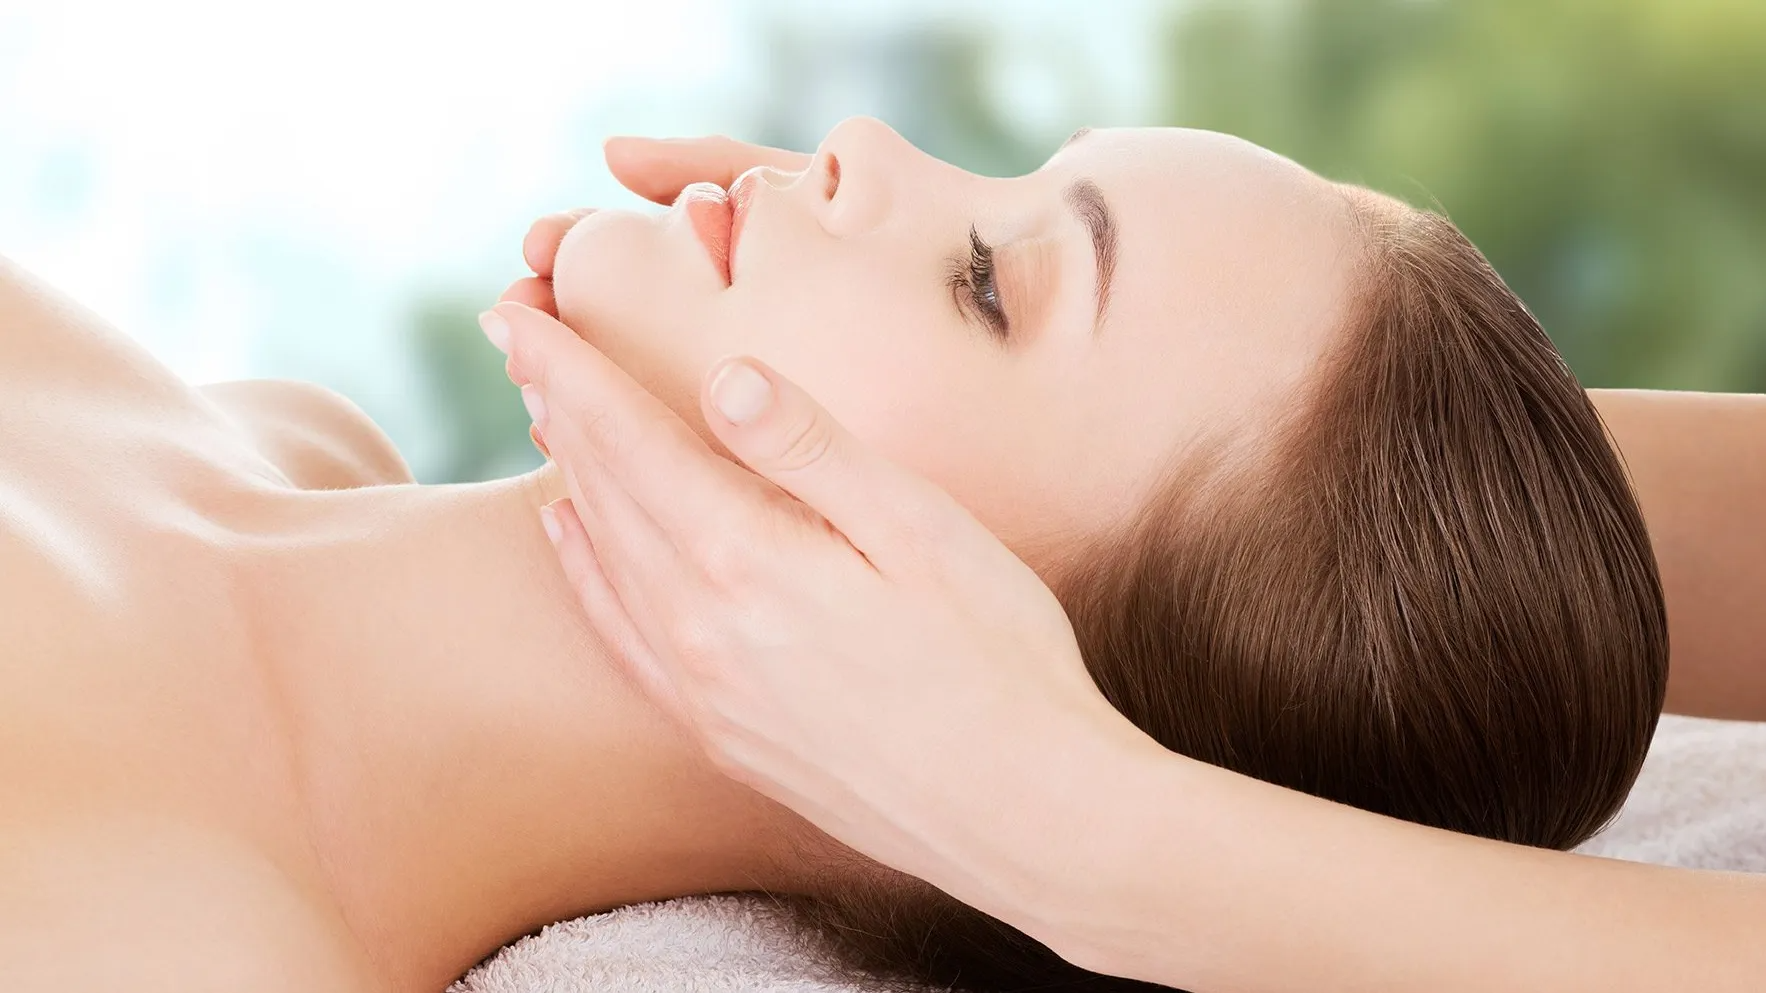 etobicoke massage services